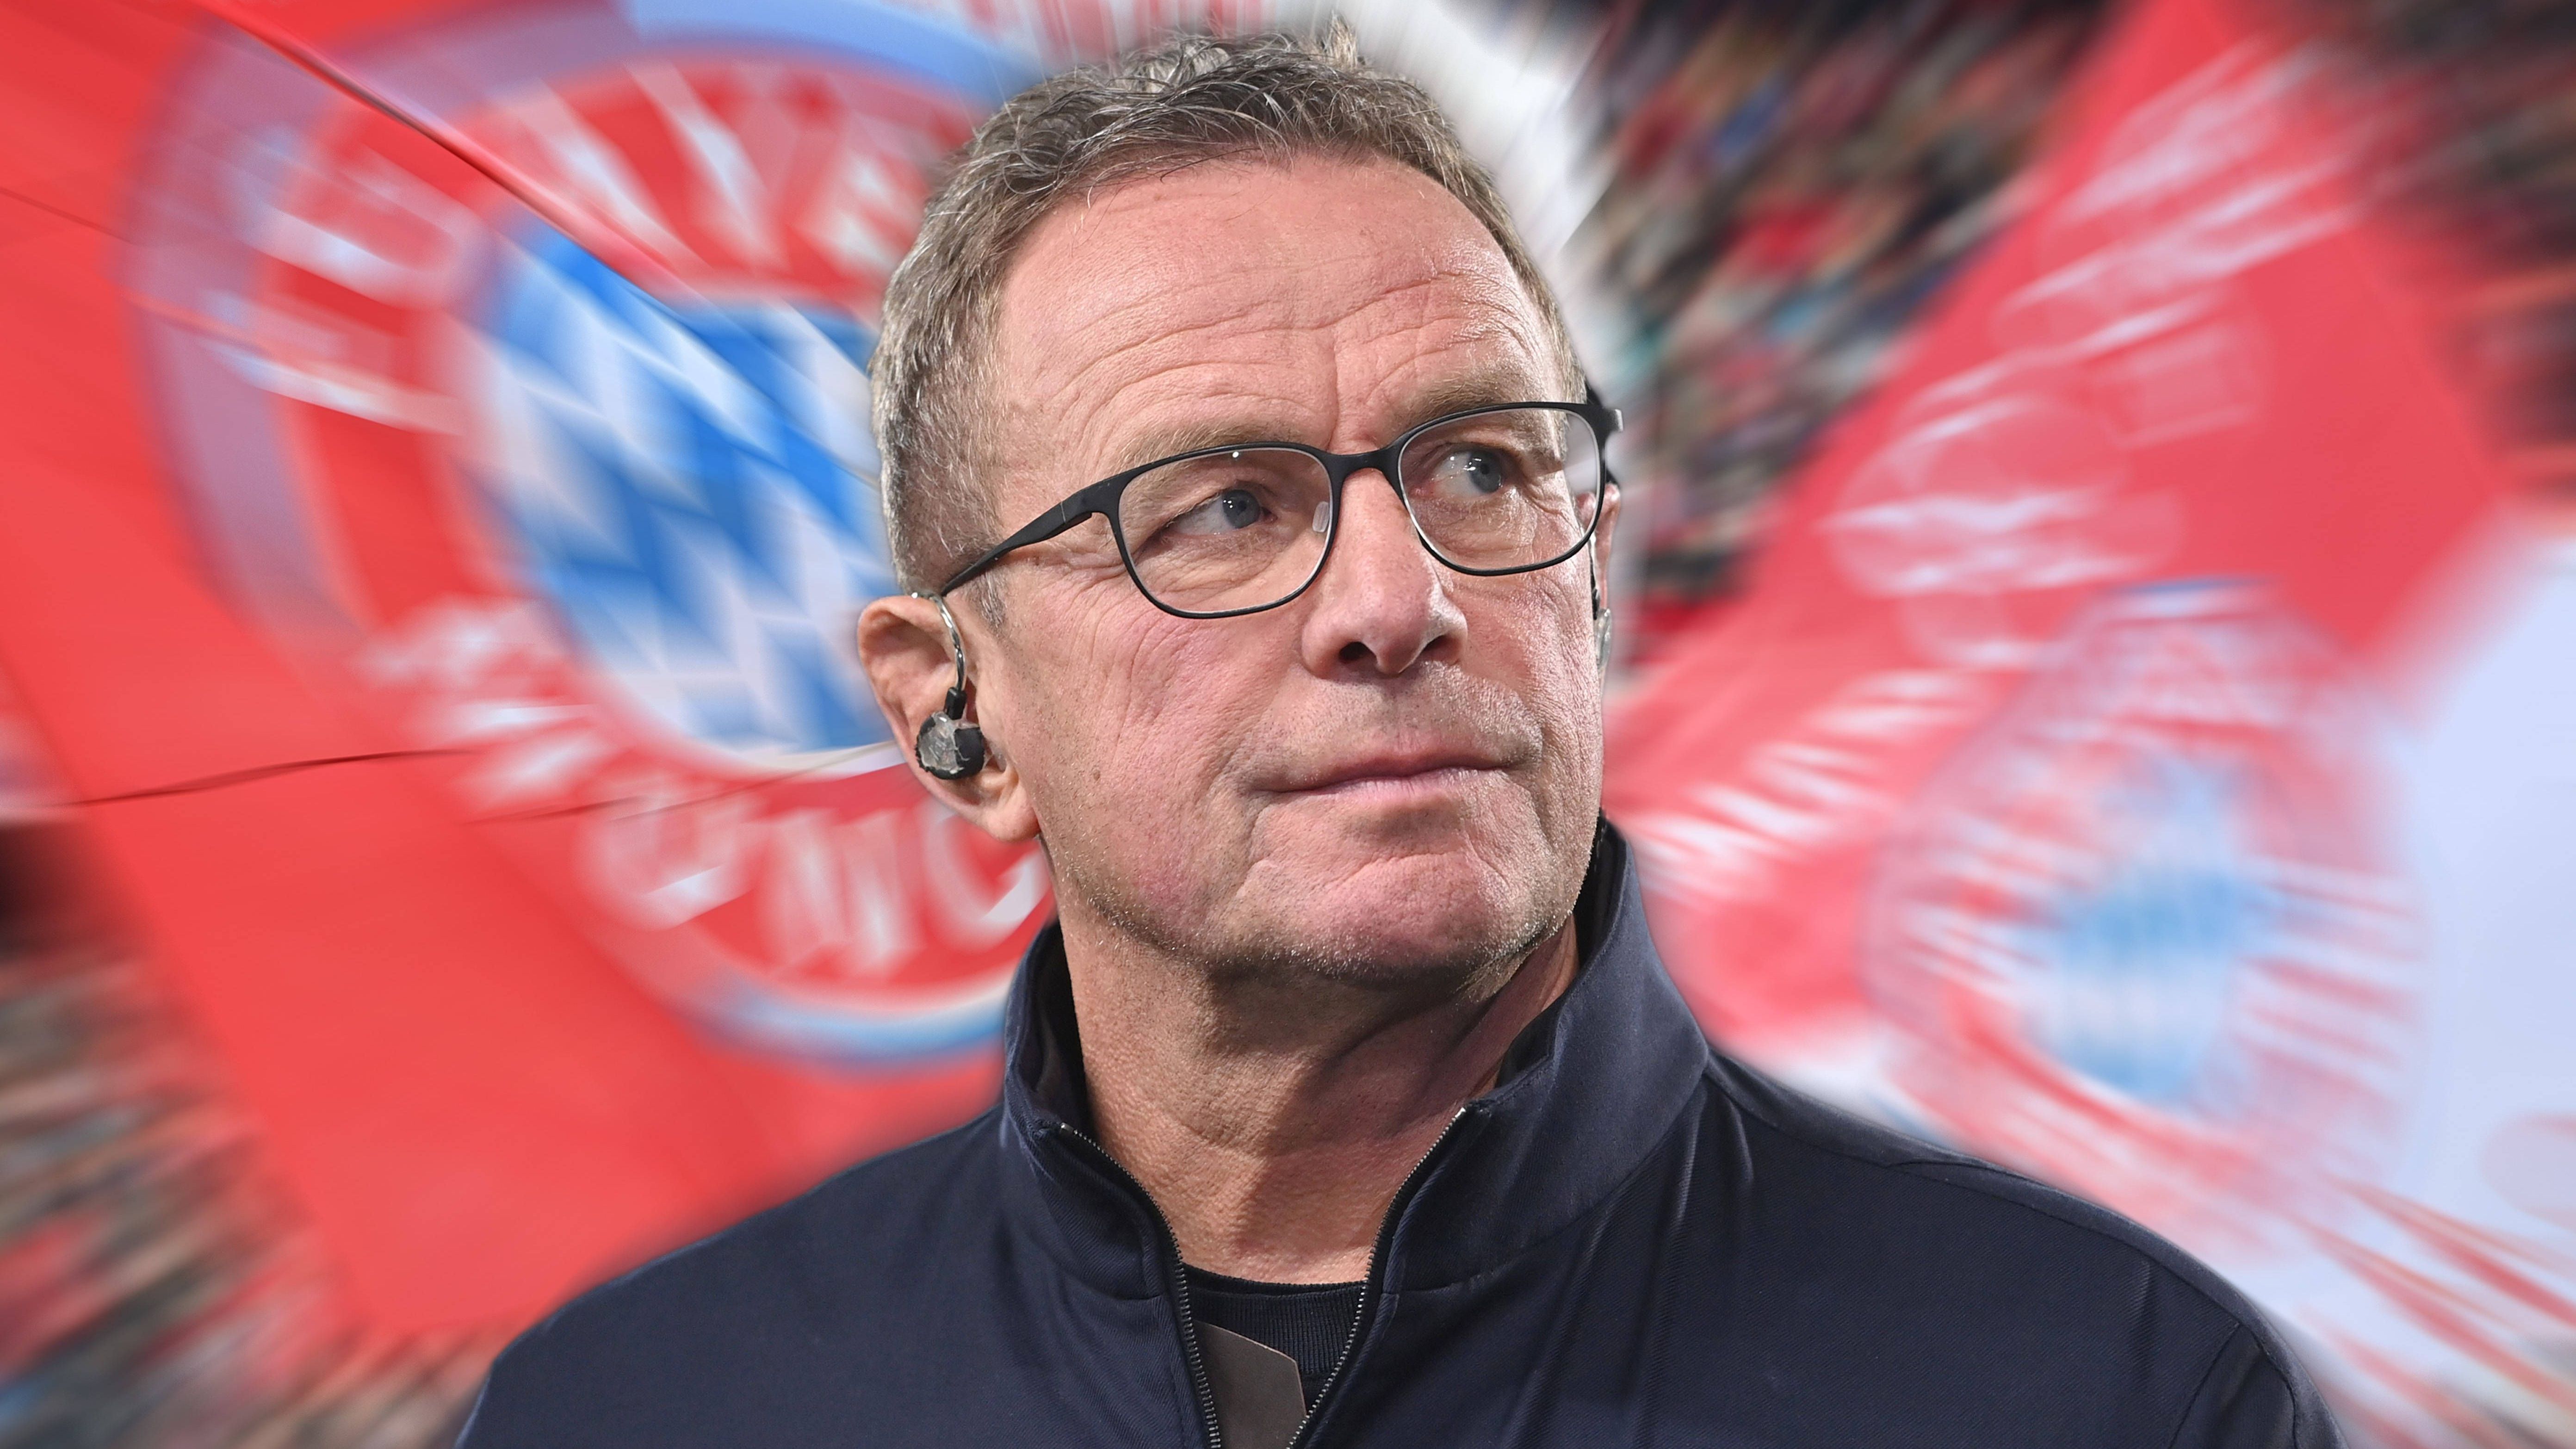 <strong>Ralf Rangnick (Nationalteam Österreich)</strong><br>"Ich bin mit vollem Herzen österreichischer Teamchef. Diese Aufgabe macht mir unglaublich viel Freude und ich bin fest entschlossen, unseren eingeschlagenen Weg erfolgreich weiterzugehen“, sagt Ralf Rangnick auf der Website des ÖFB und verpasste dem FC Bayern somit einen Korb.